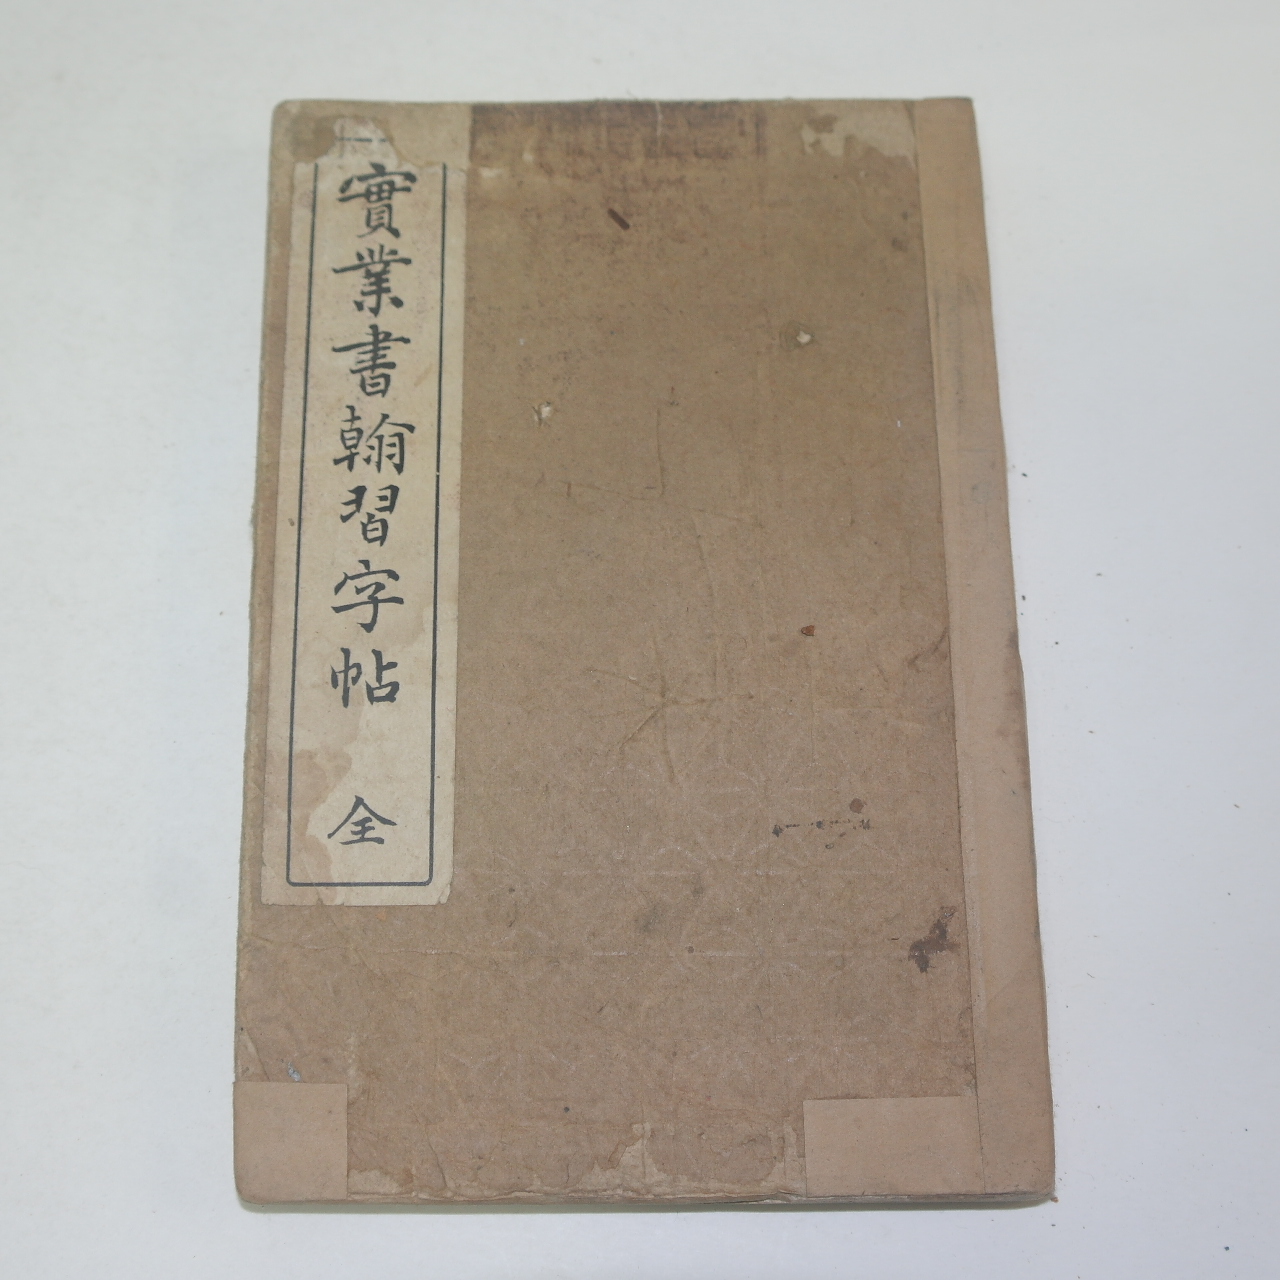 1928년 일본간행 실업서한습자첩(實業書翰習字帖)